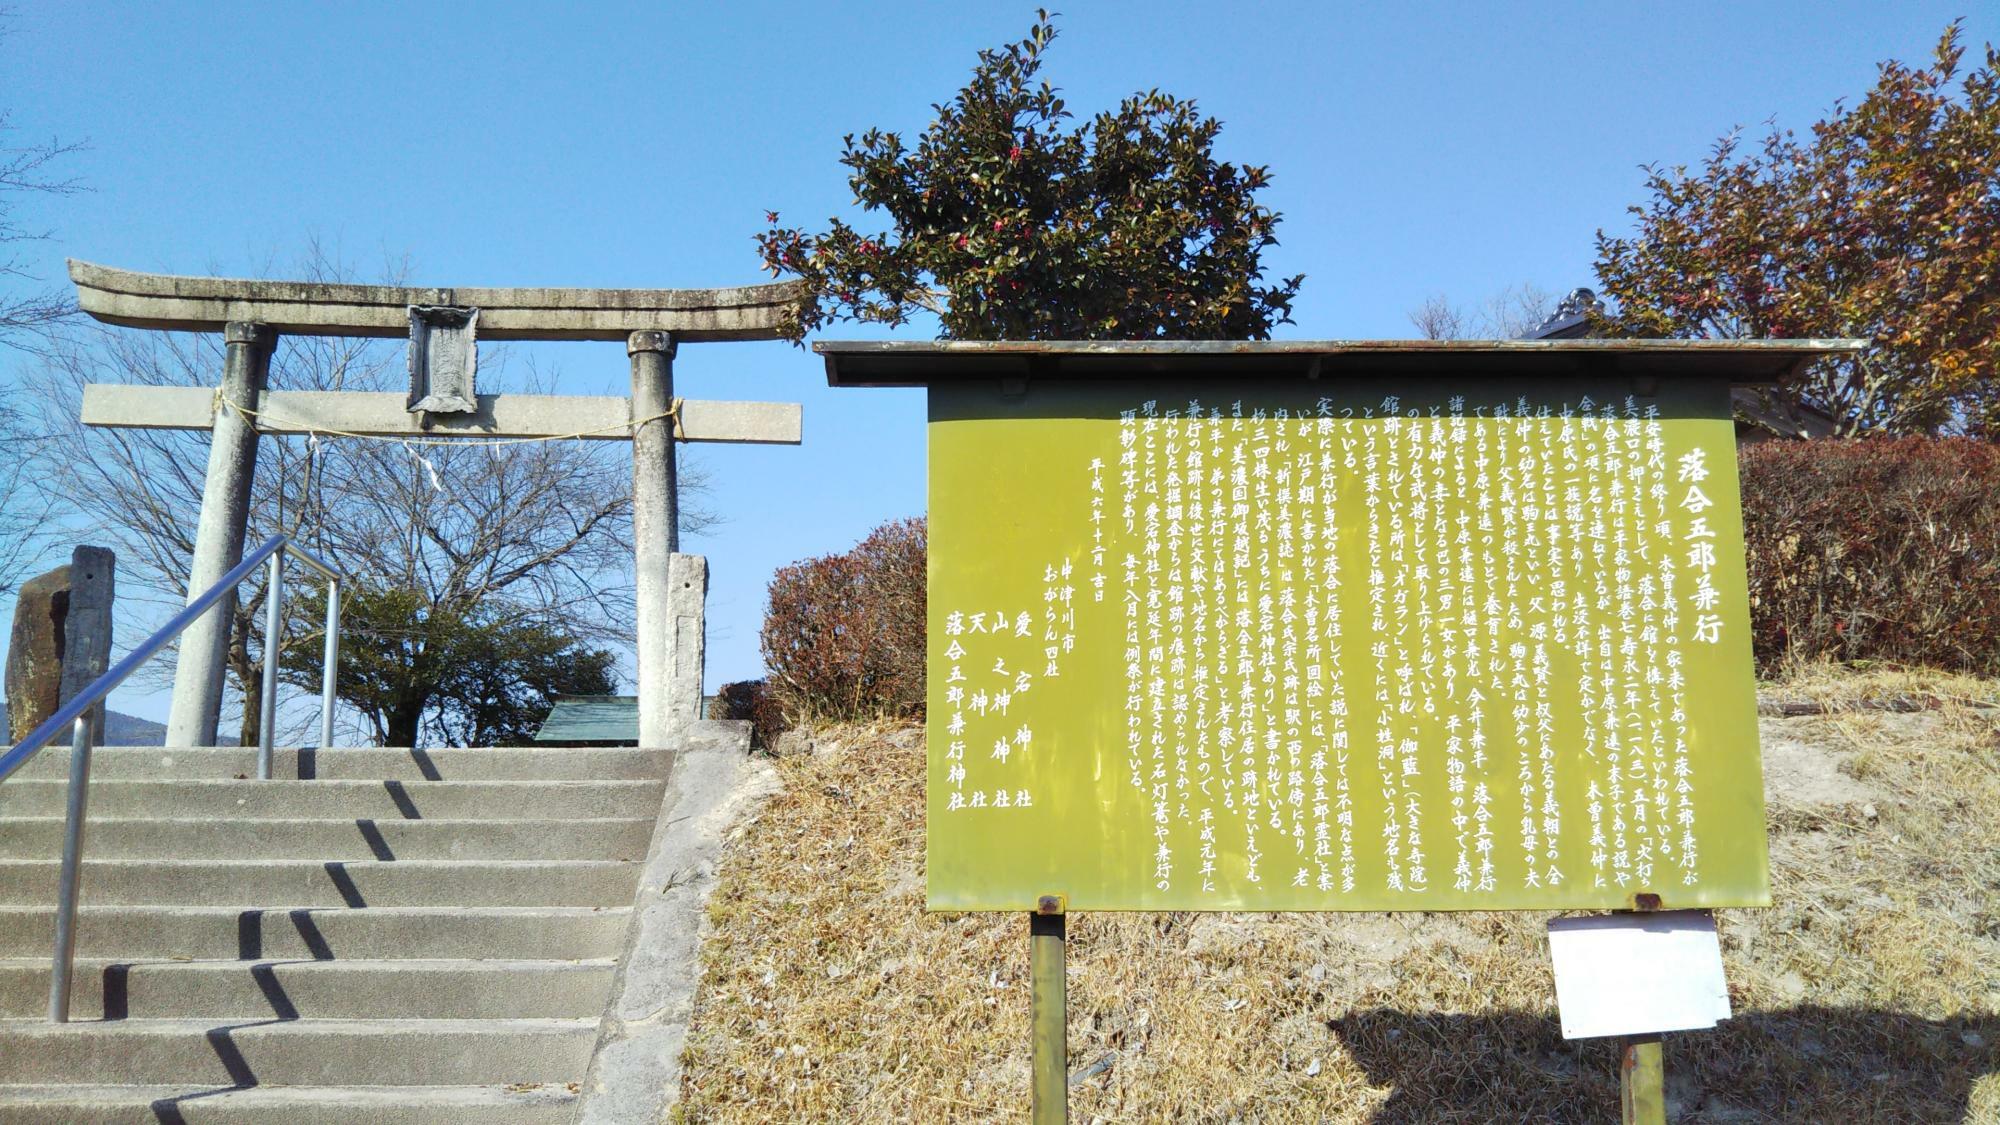 木曽義仲の家臣だった落合五郎兼行の館を構えたとされる神社にたどり着きます